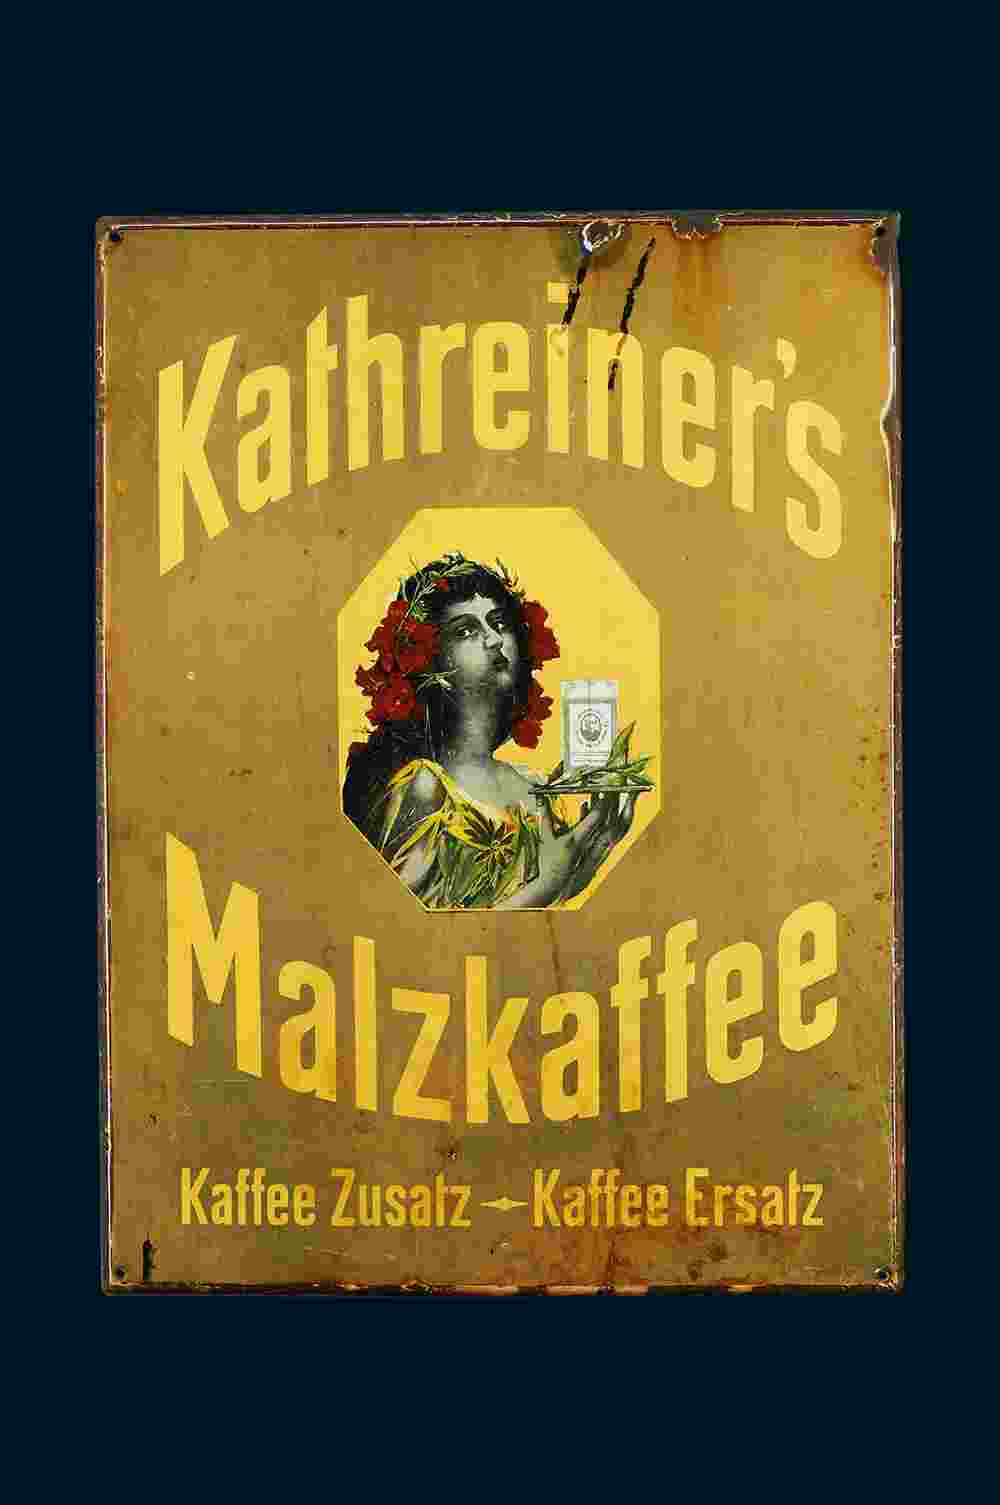 Kathreiner's Malzkaffee 